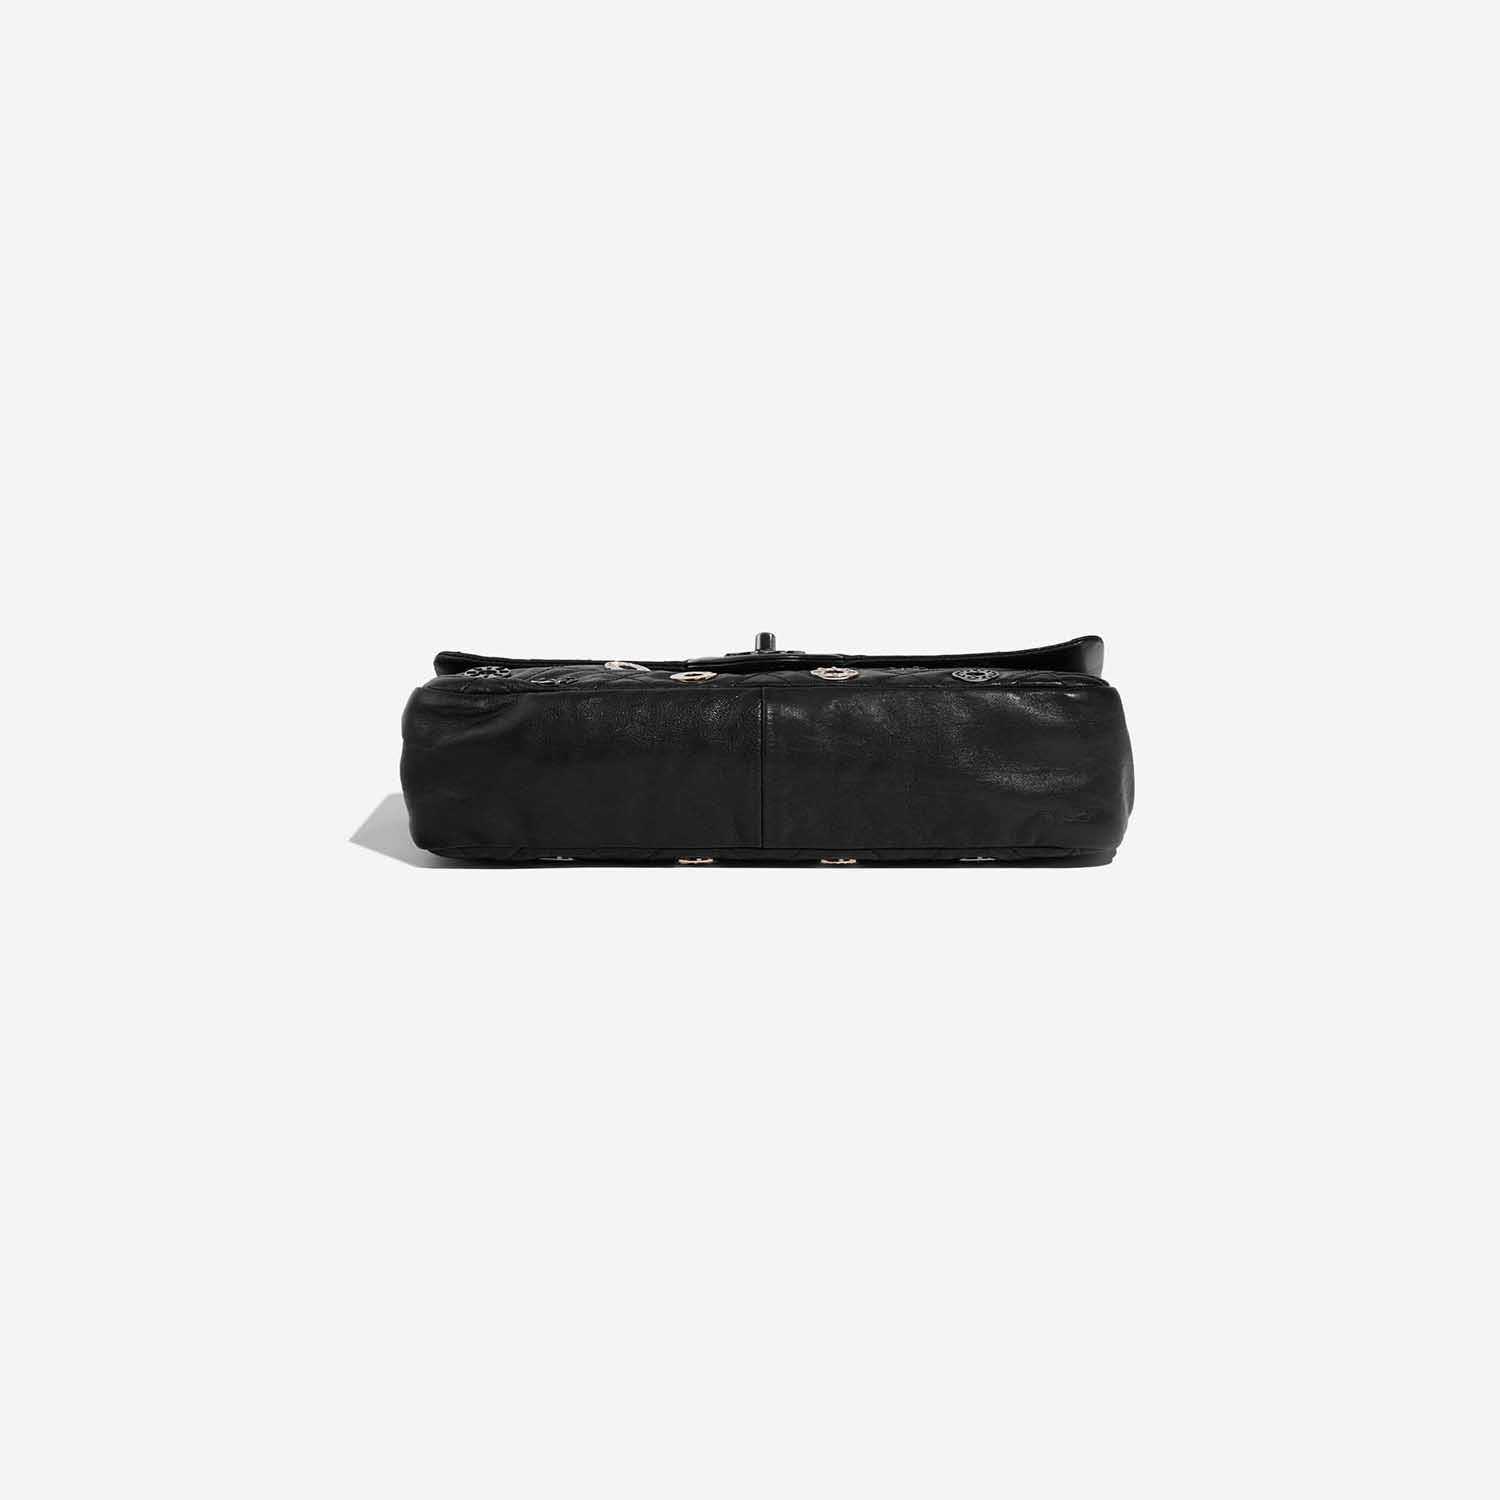 Chanel Timeless Medium Black Bottom | Verkaufen Sie Ihre Designer-Tasche auf Saclab.com